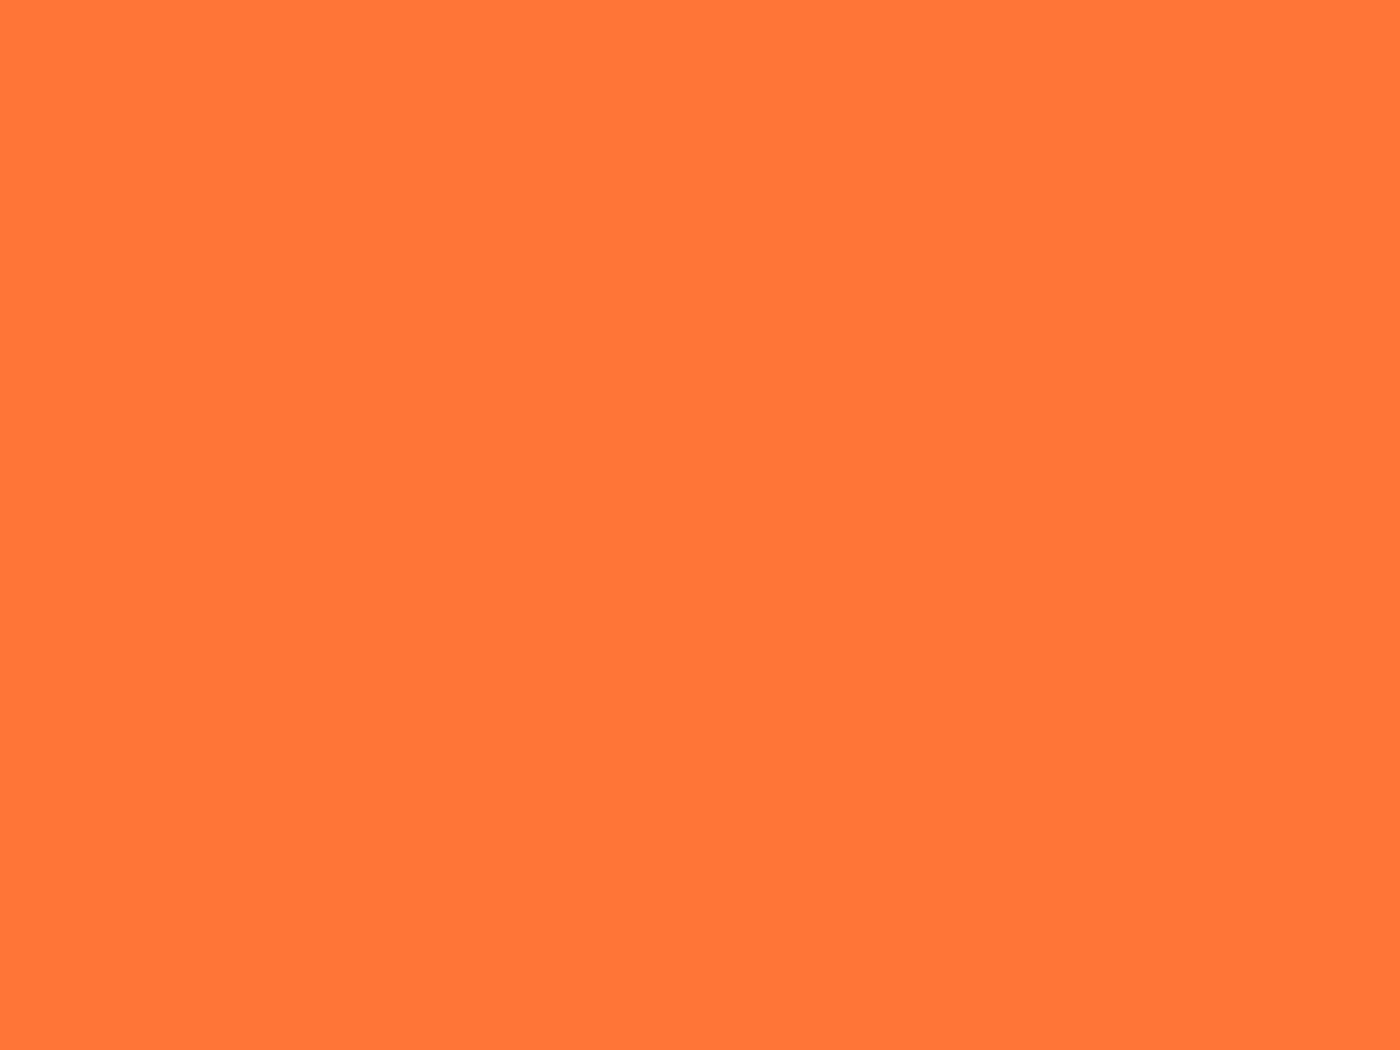 1400x1050 Orange Crayola Solid Color Background